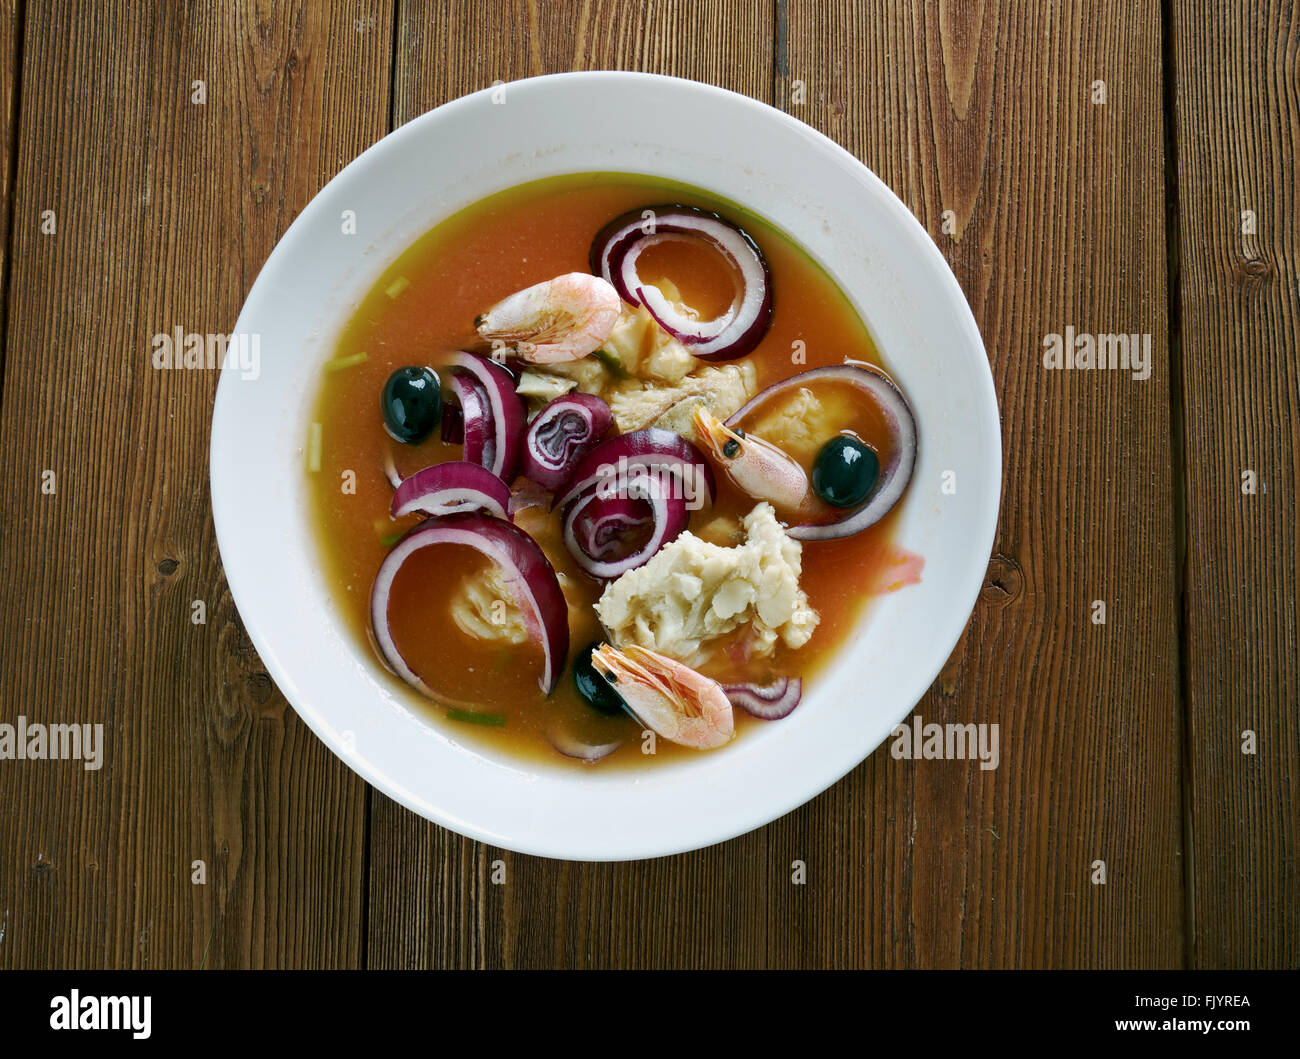 encebollado fish soup from Ecuador Stock Photo